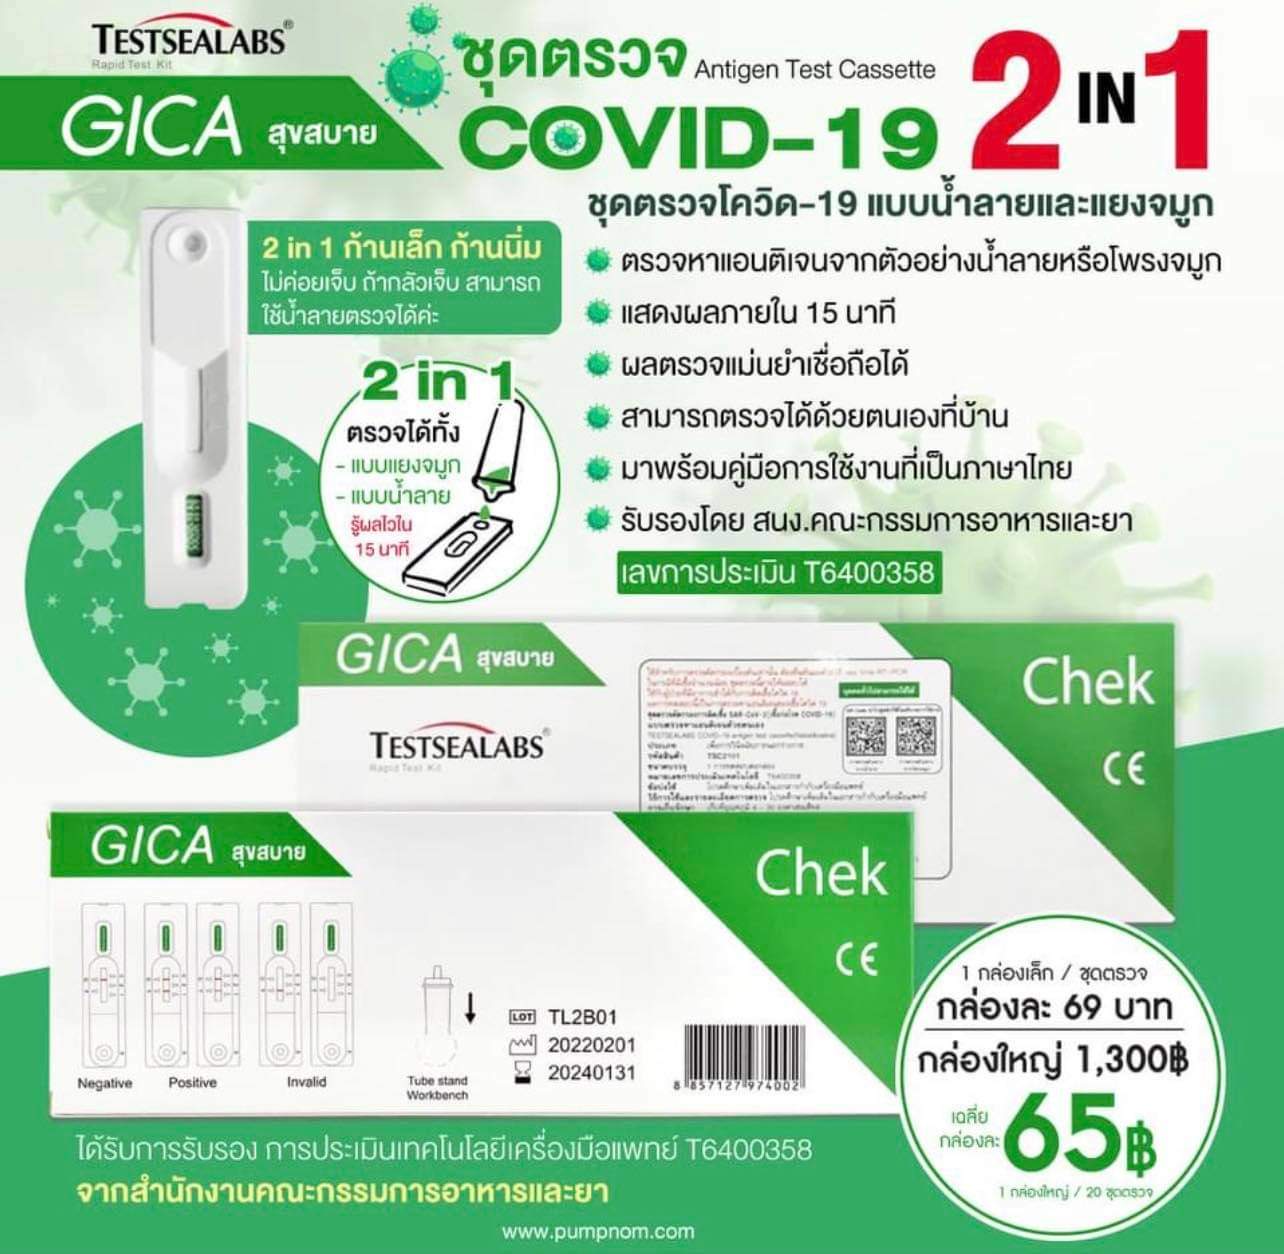 ชุดตรวจโควิด-19 ATK Gica 2in1 สามารถตรวจได้ทางน้ำลายหรือแยงจมูก 1กล่อง 1เทส Gica Testsealabs Antigen Test Cassette ATK